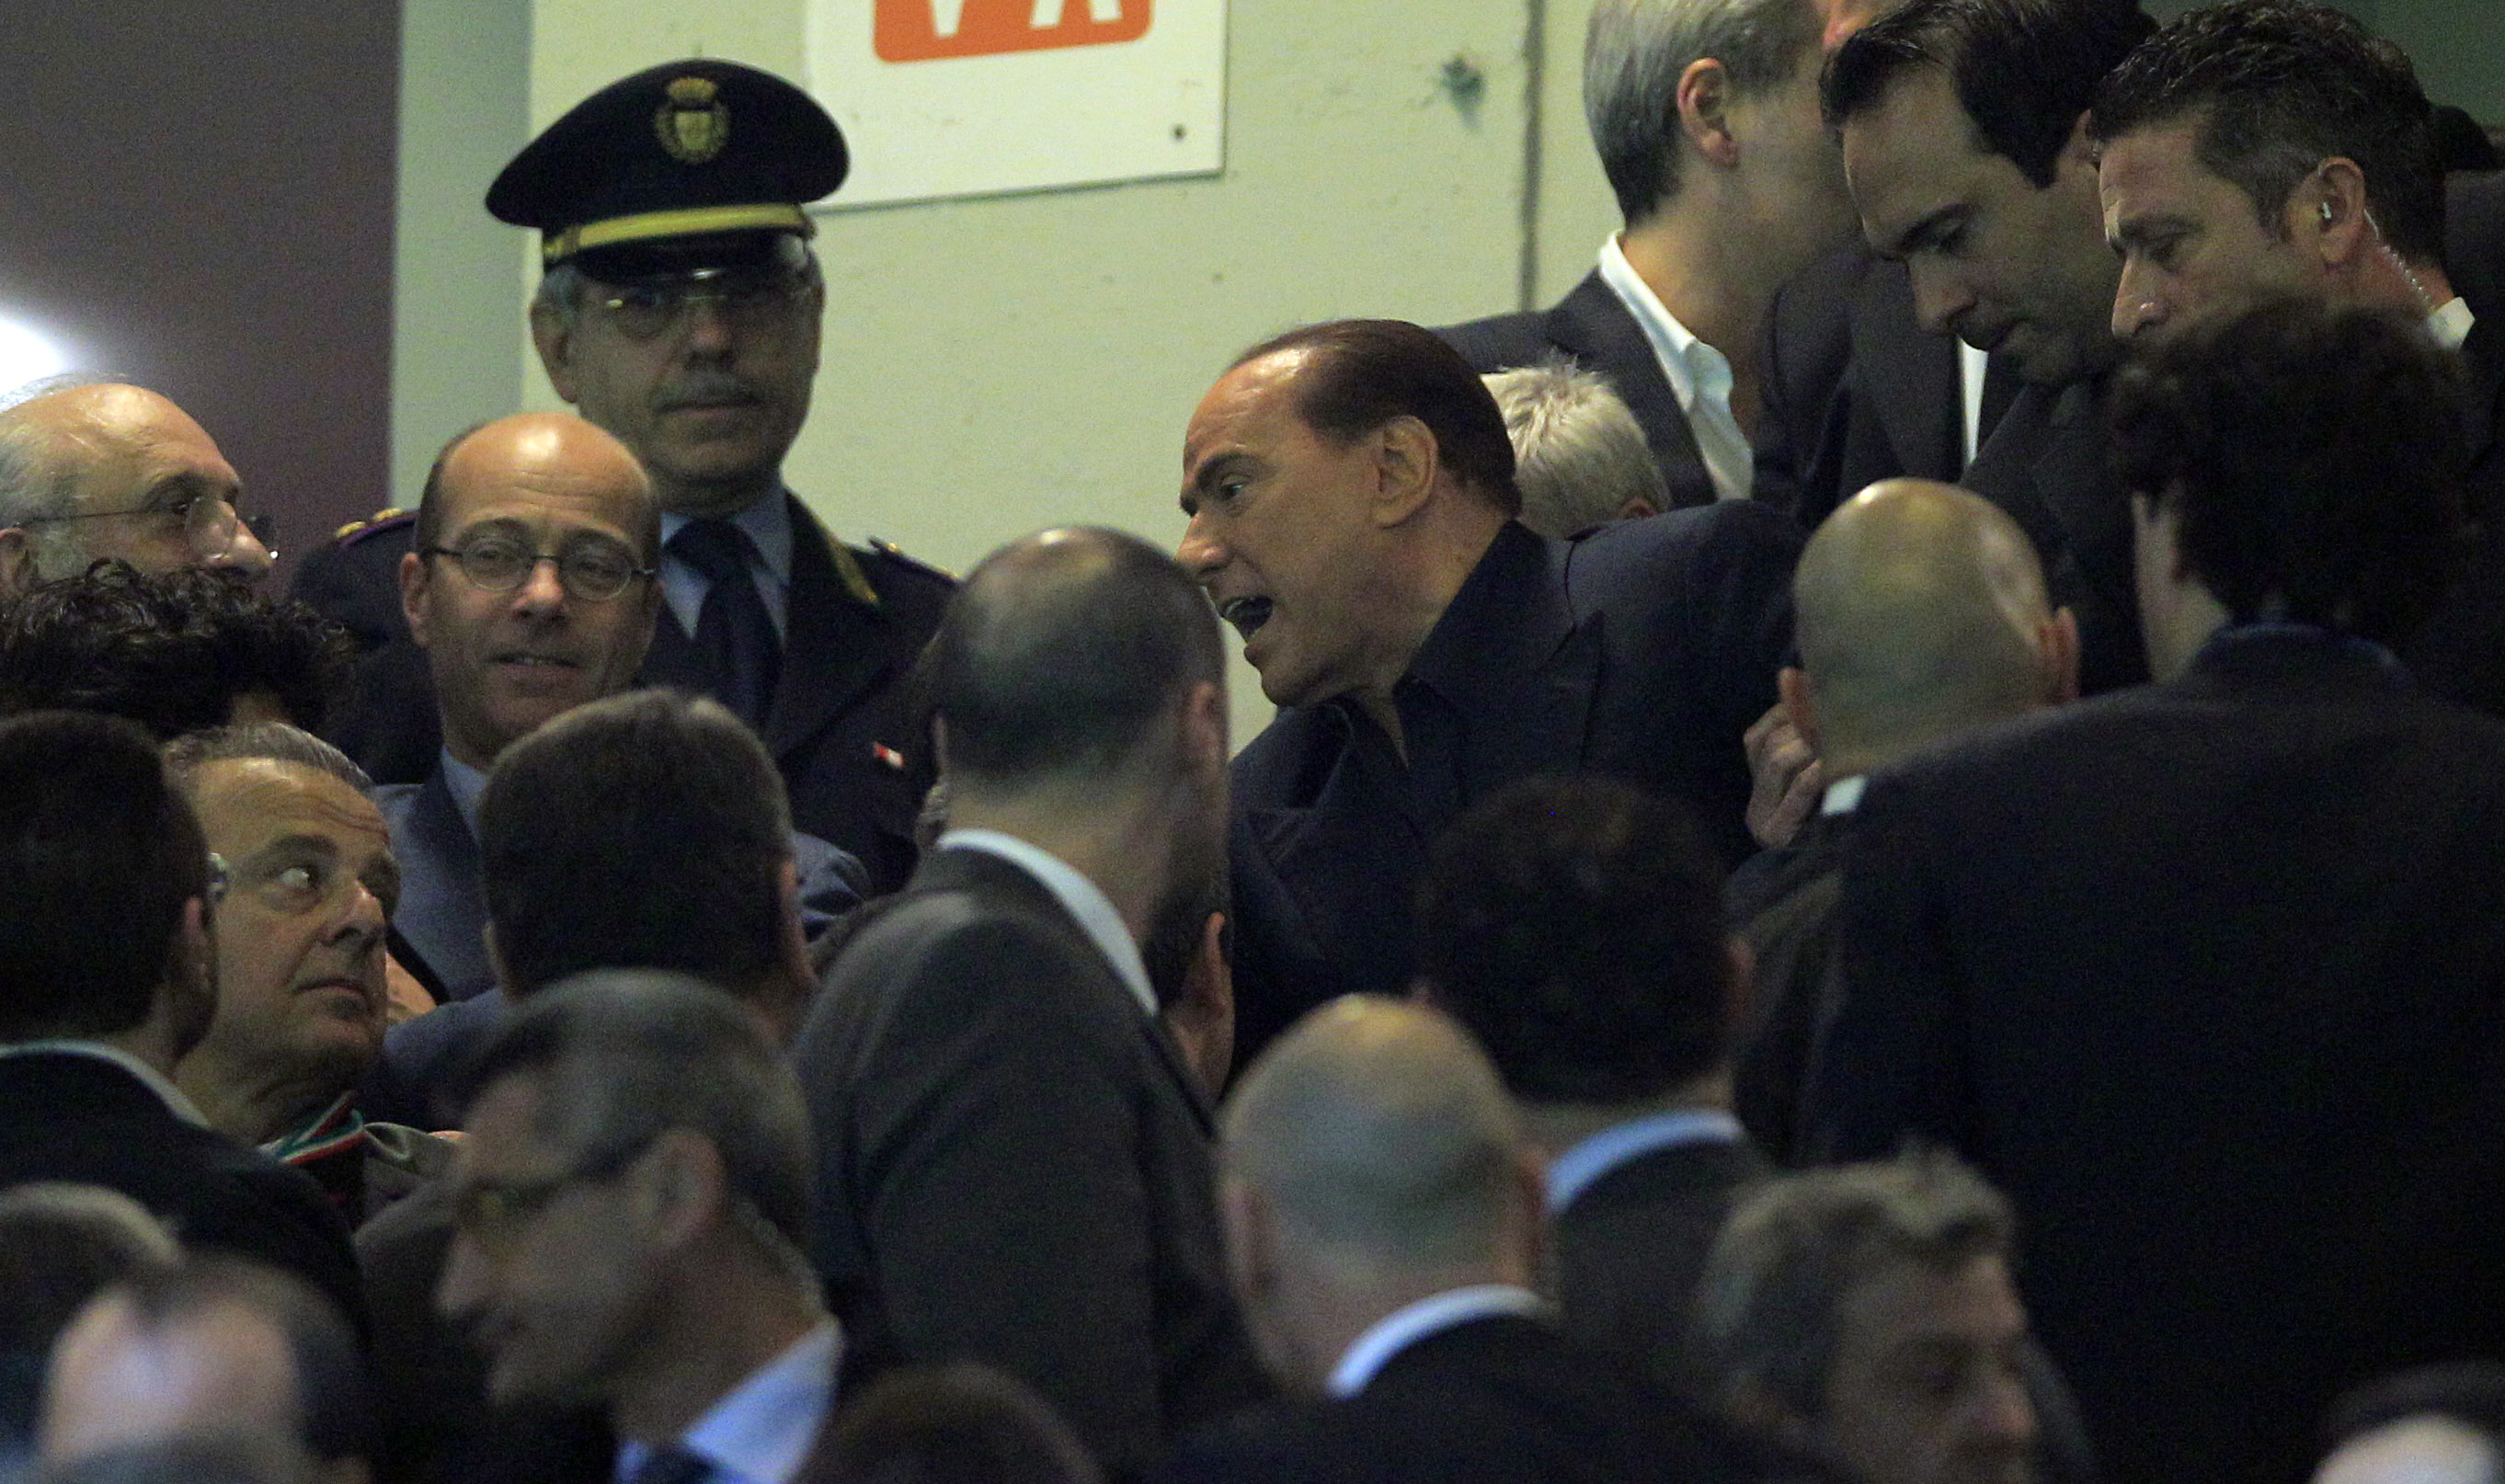 Diskussionen gick varm på läktaren och bildproducenten fångade sin vana trogen Silvio Berlusconi på bild. 